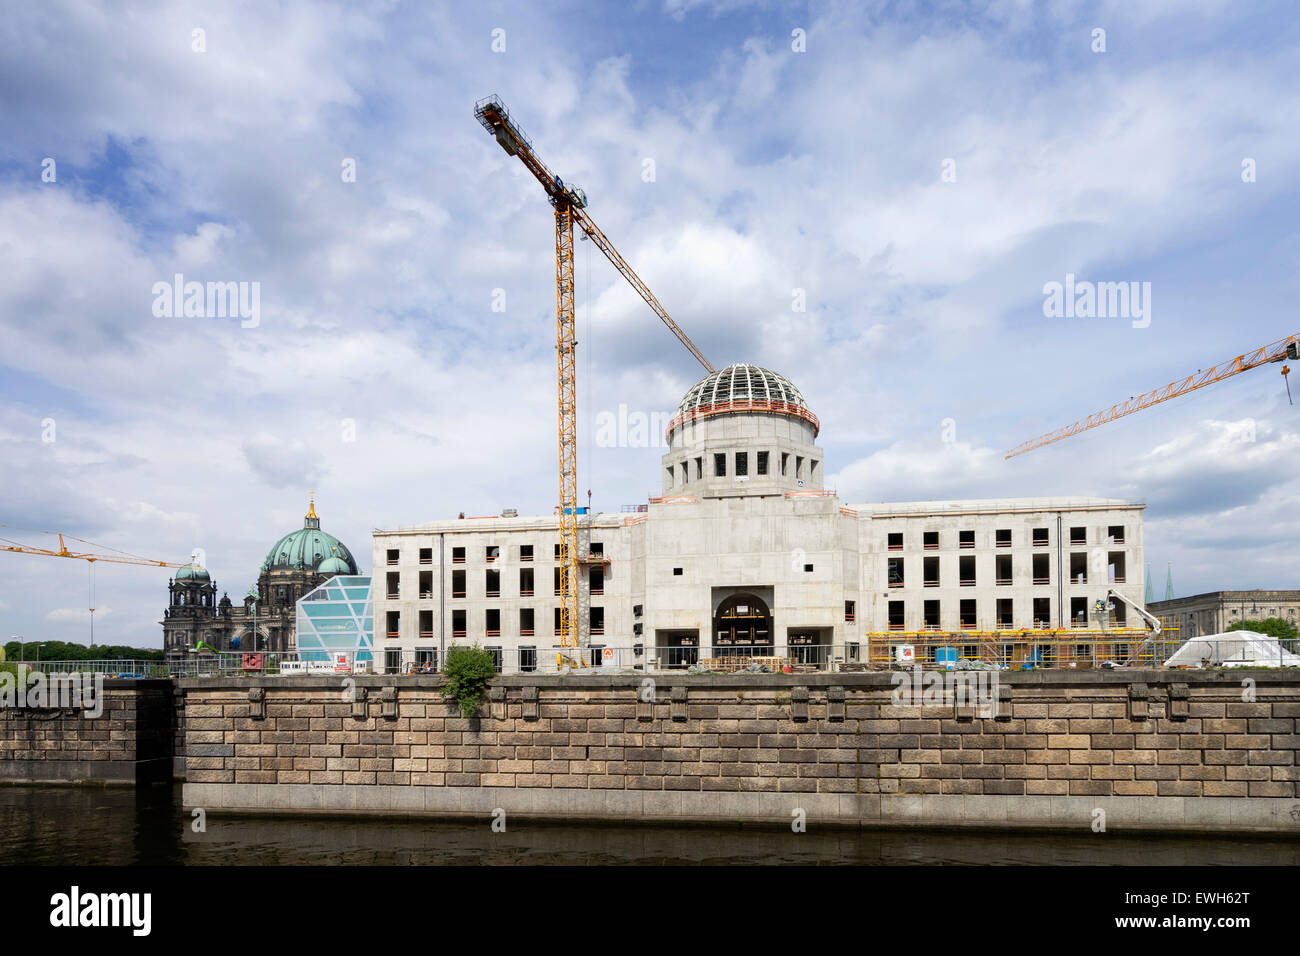 La construction de nouveaux palais de Berlin reconstruit ou Berliner Schloss sur l'île des musées à Mitte Berlin Allemagne Banque D'Images